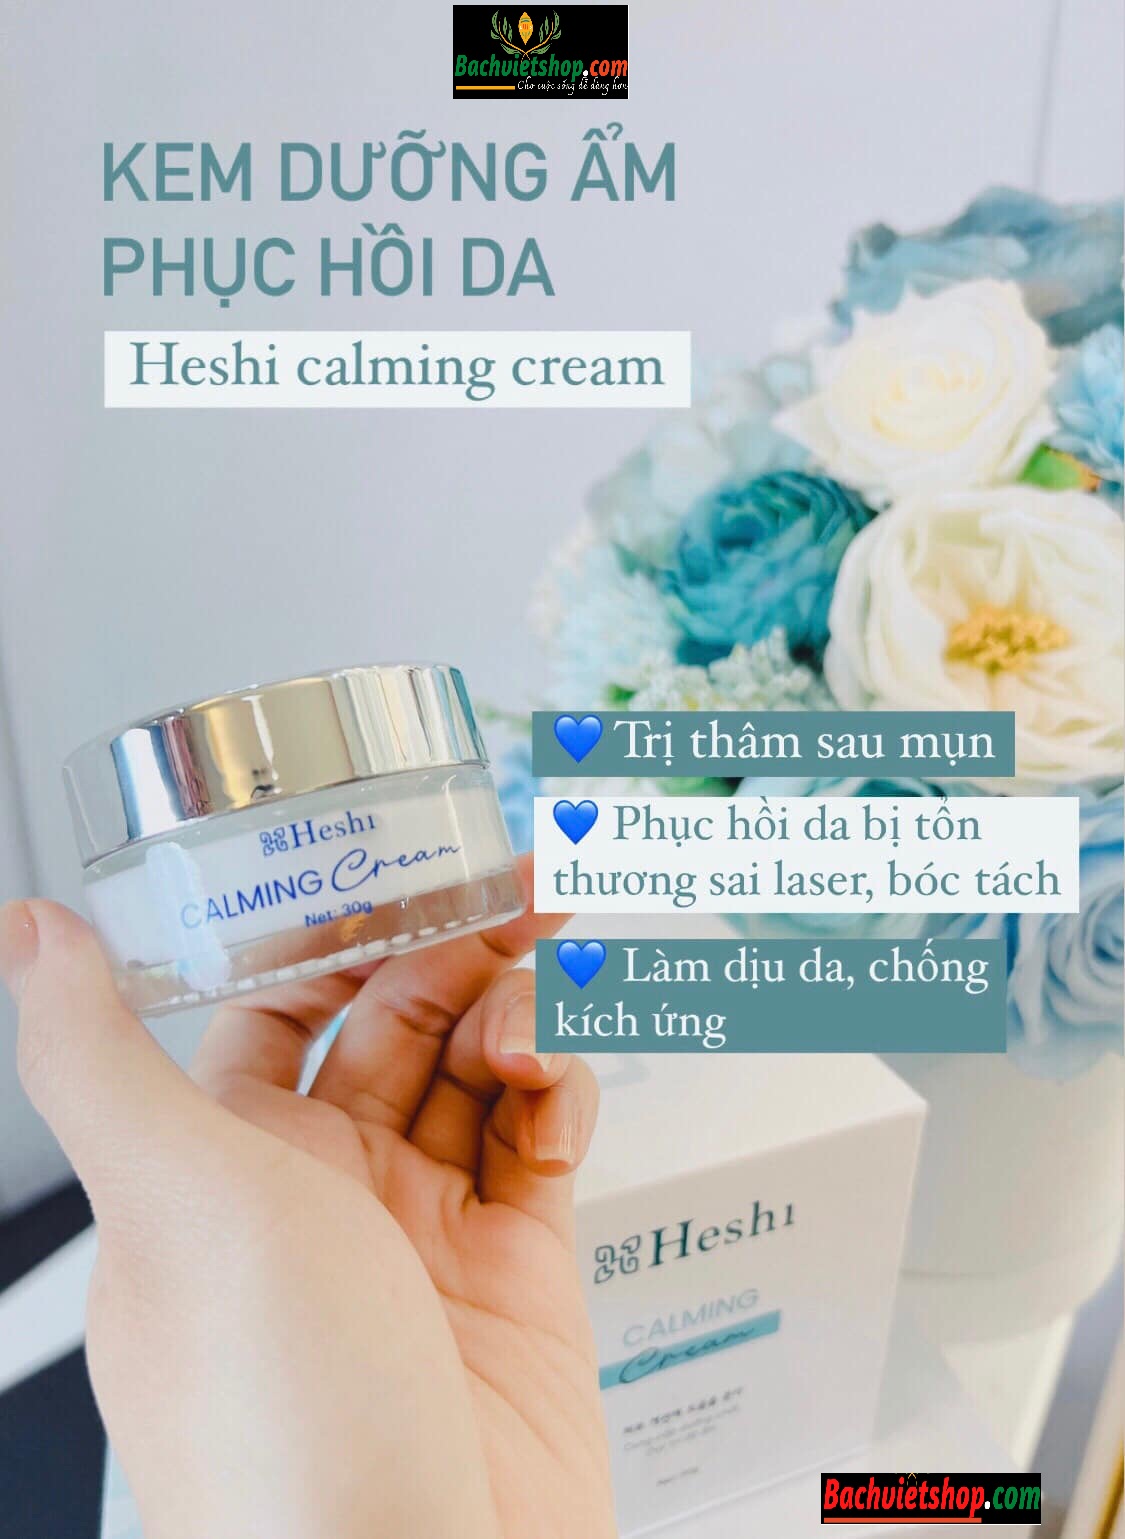  Việc sử dụng kem dưỡng phục hồi Heshi Calming Cream sẽ giúp da chóng lành, giảm kích ứng và hạn chế bong tróc, sưng viêm! 